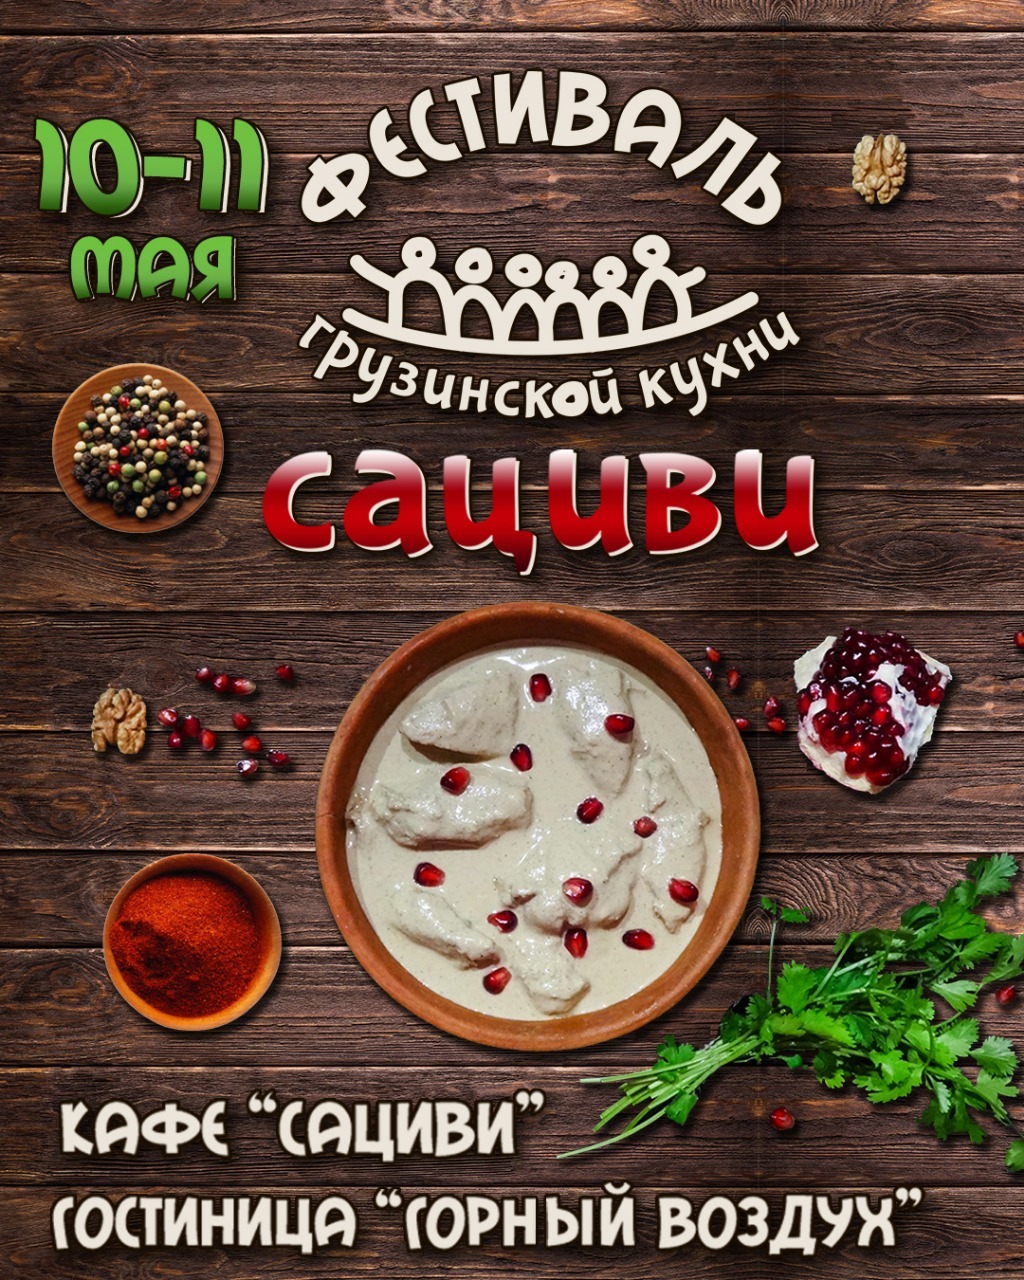 Первый фестиваль грузинской кухни в кафе "Сациви"